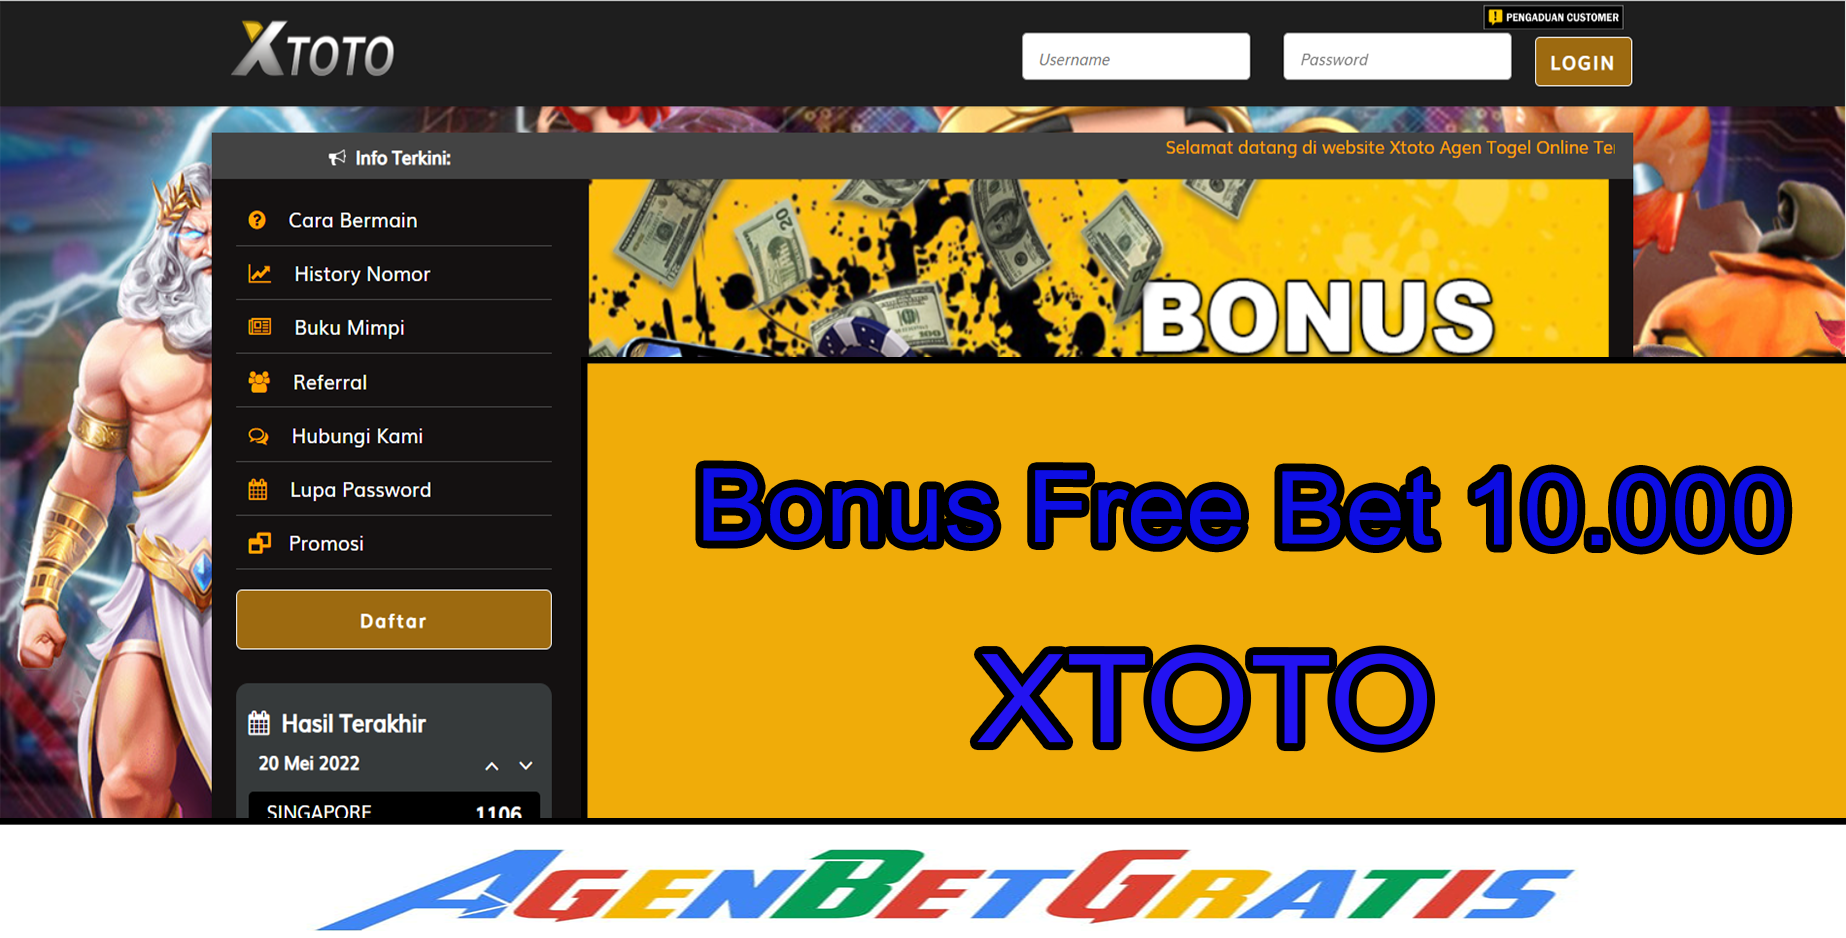 XTOTO - Bonus FreeBet 10.000